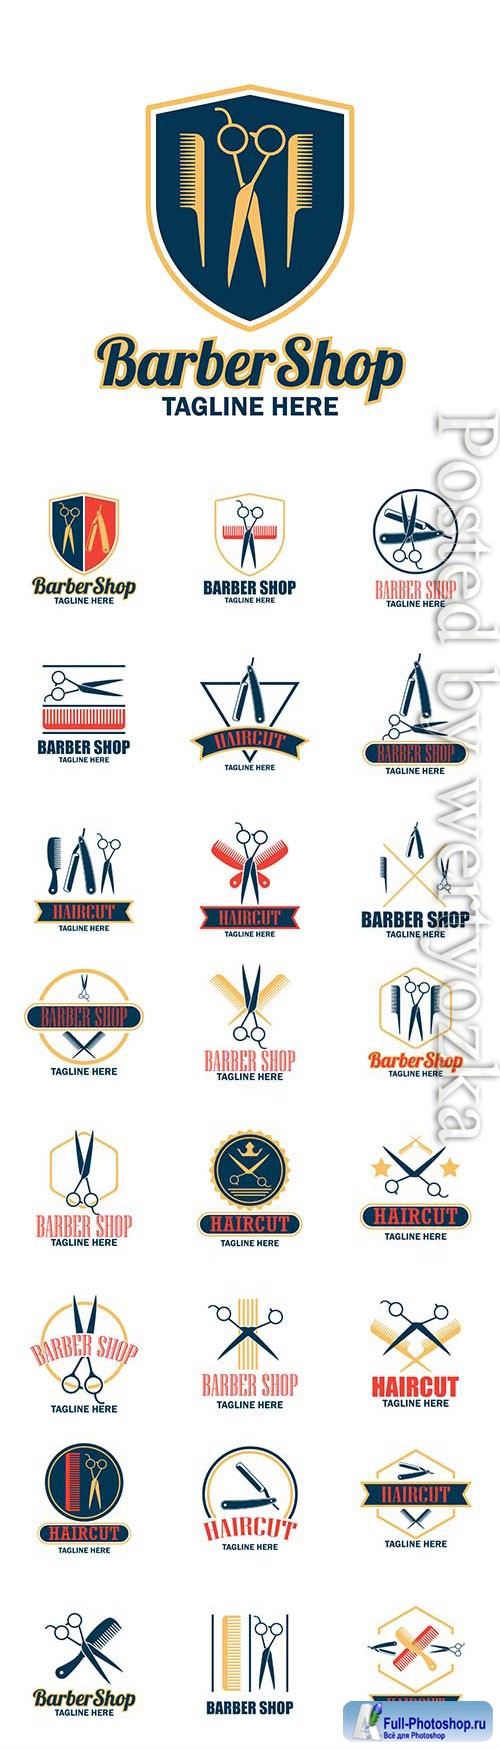 Barber shop logos in vector